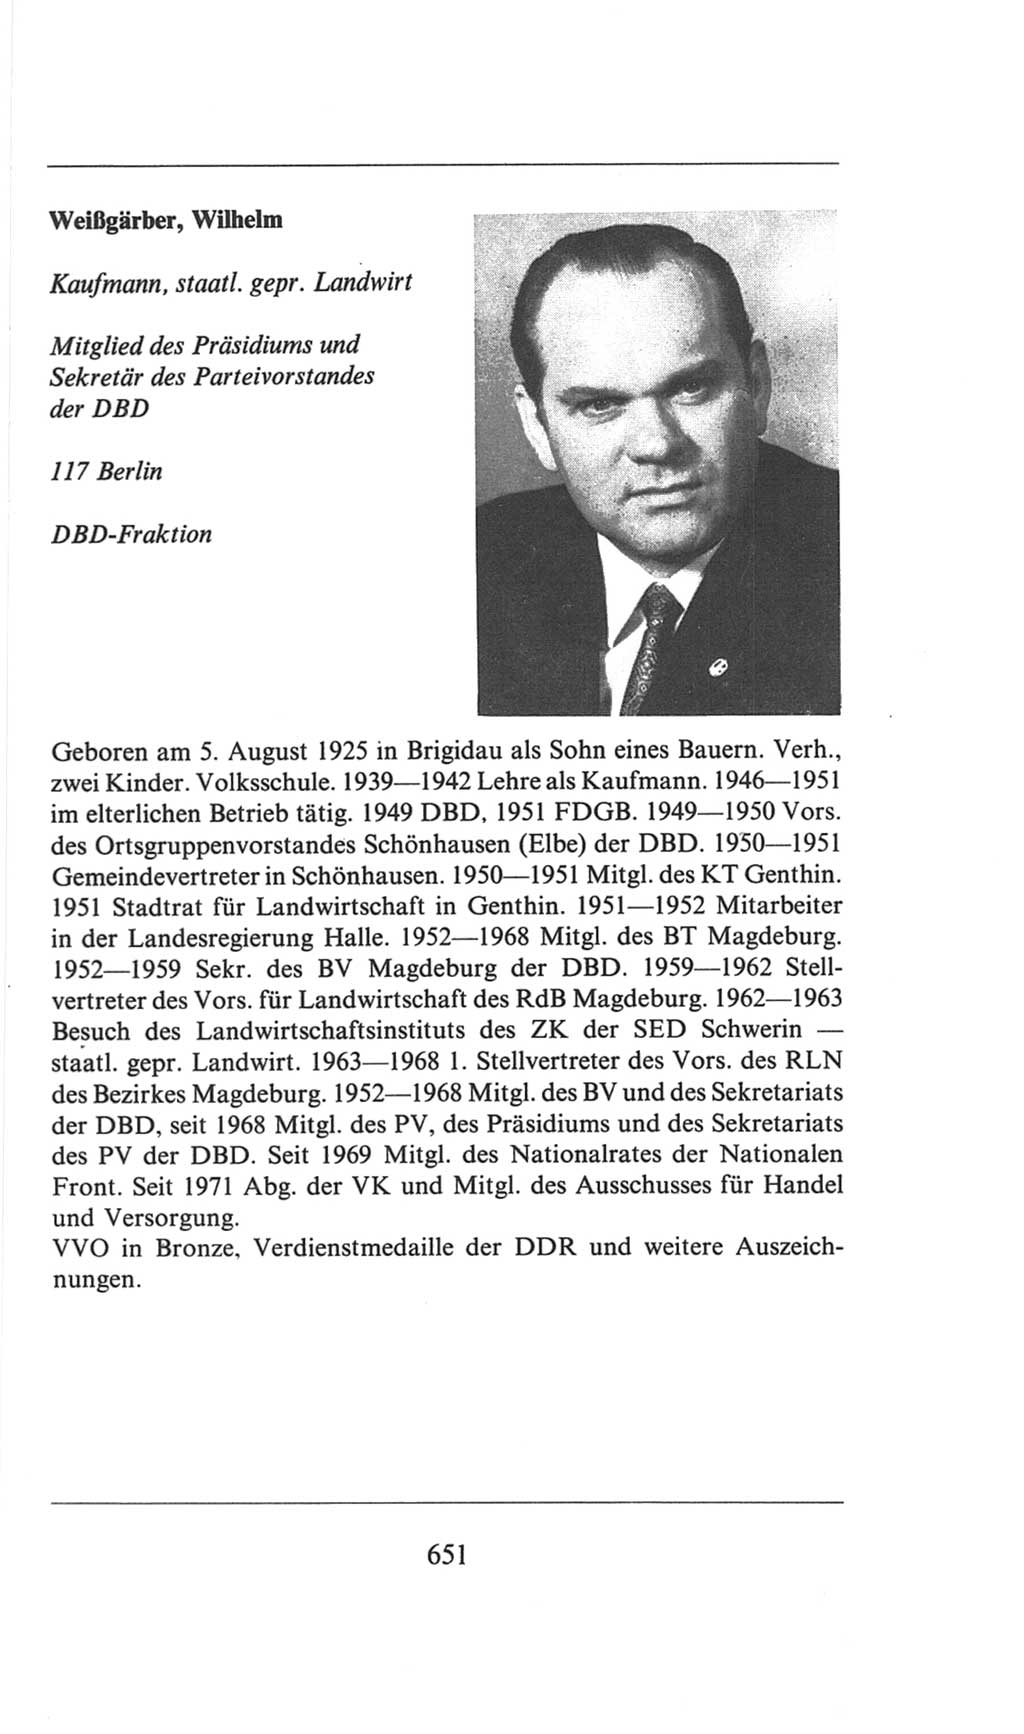 Volkskammer (VK) der Deutschen Demokratischen Republik (DDR), 6. Wahlperiode 1971-1976, Seite 651 (VK. DDR 6. WP. 1971-1976, S. 651)